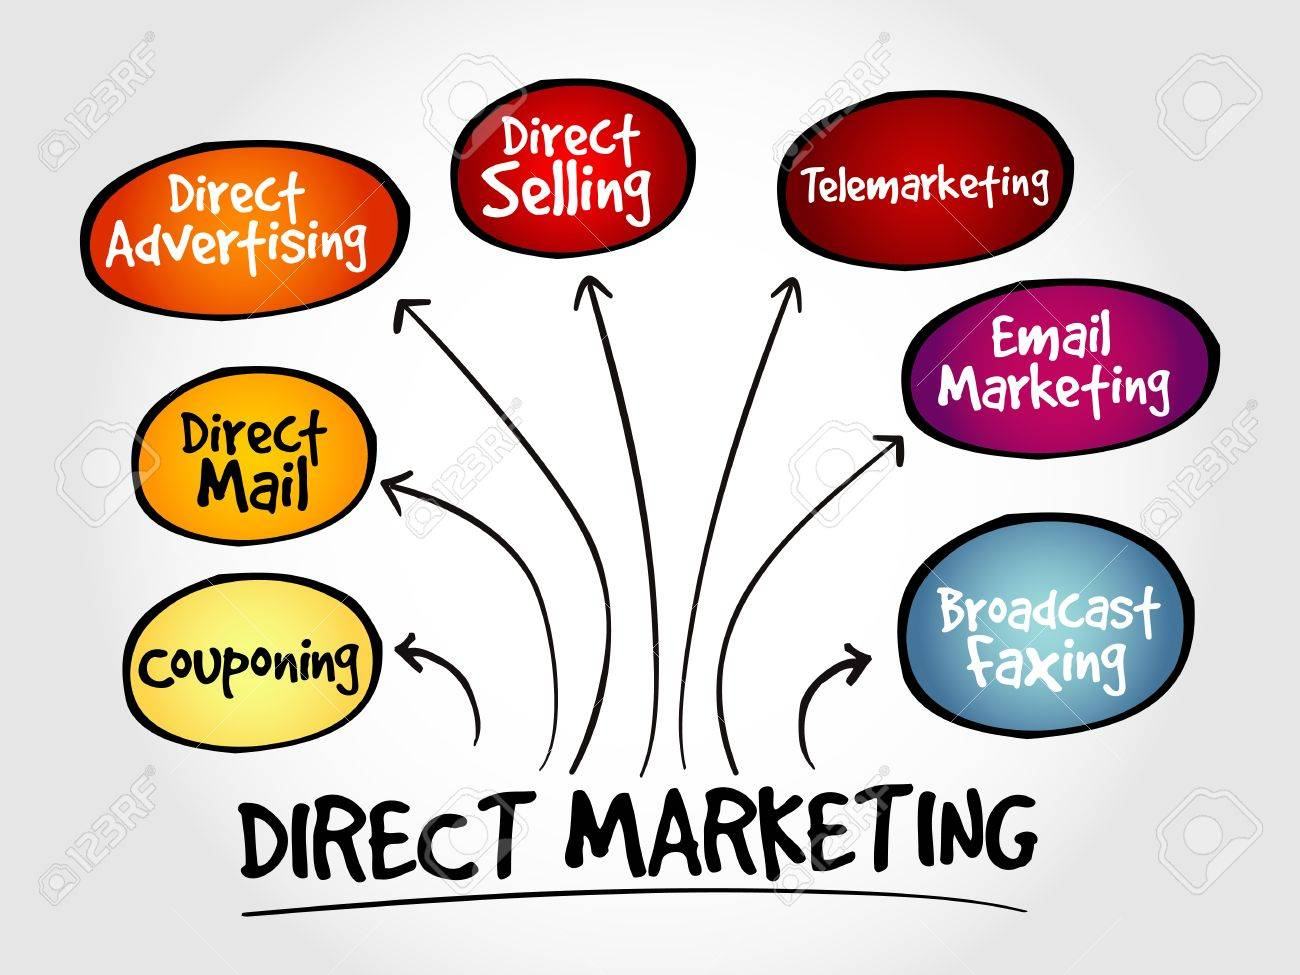 Direct Marketing là gì